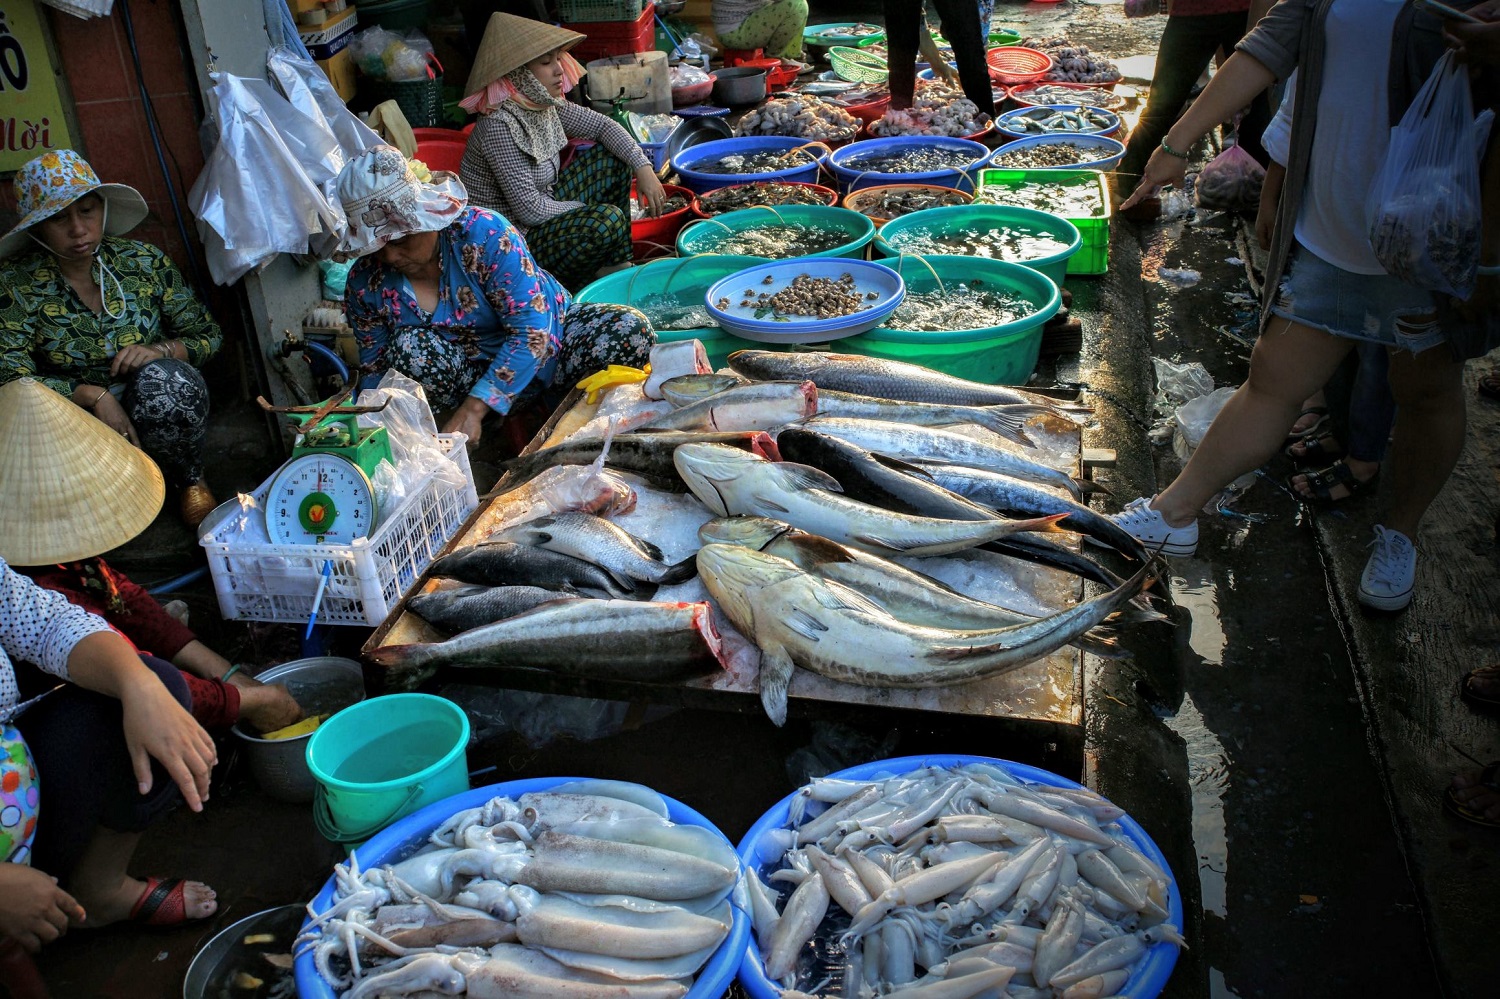 Ngoài giá, người mua hàng còn cần lưu ý những yếu tố gì khi mua hải sản tại chợ Xóm Lưới Vũng Tàu?
